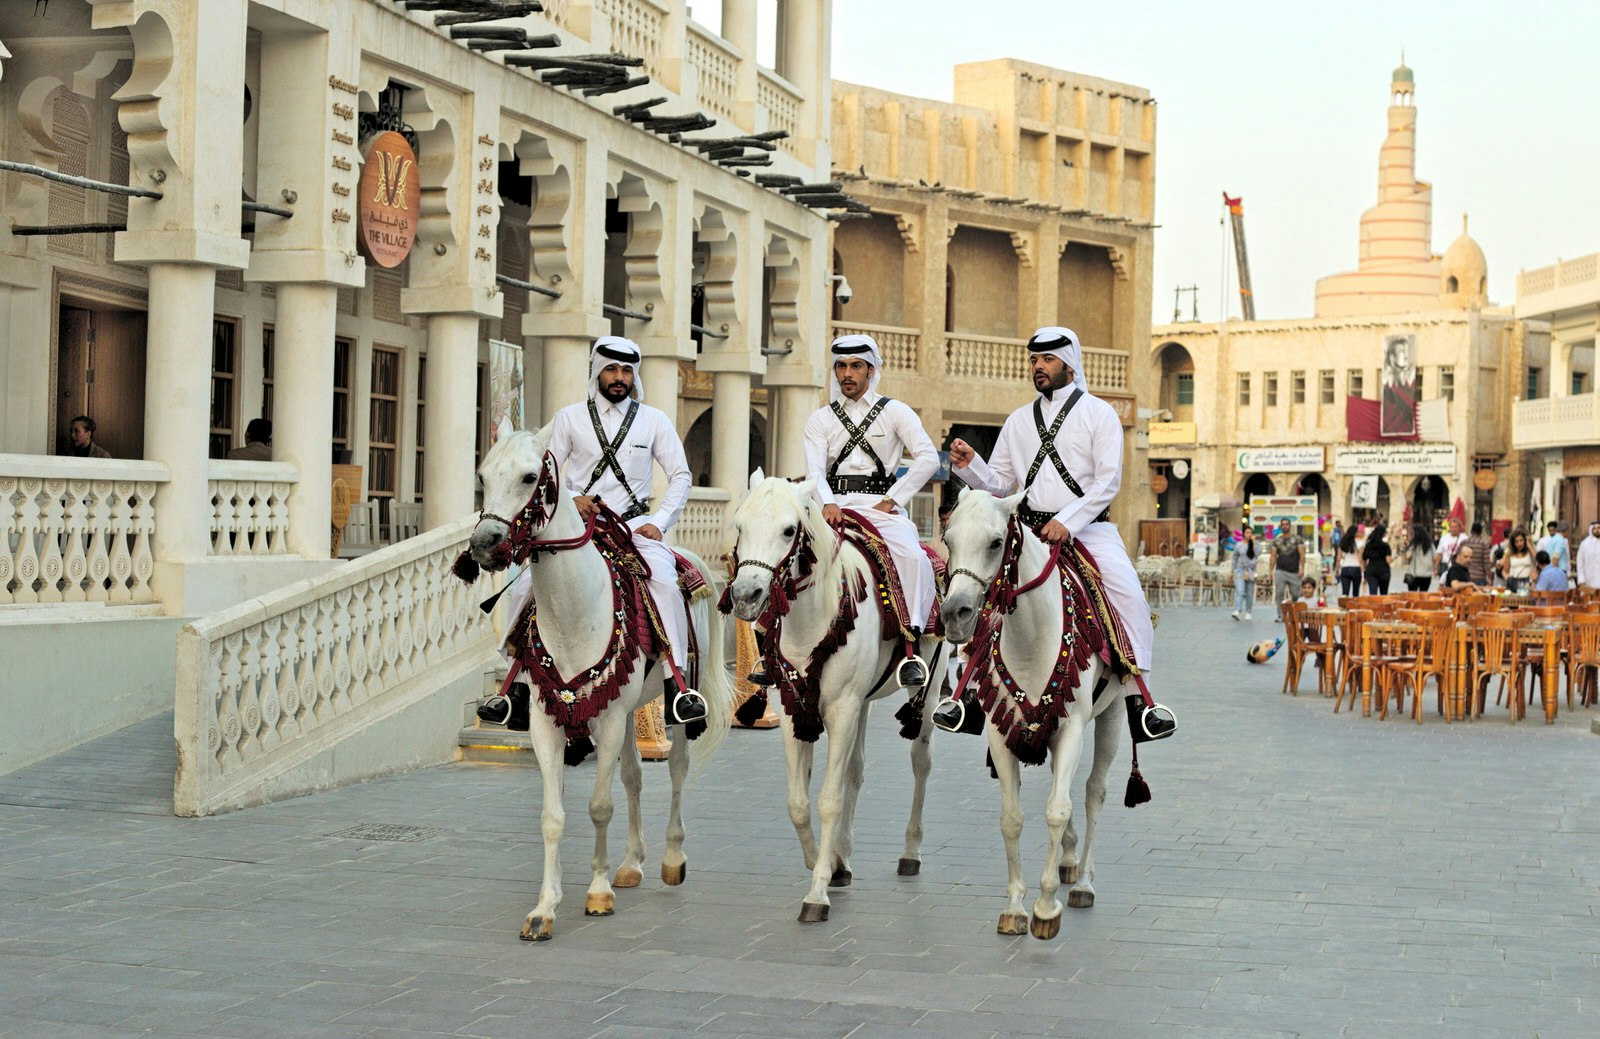 Mounted police patrol the main thoroughfare of Souq Waqif market in Doha, Qatar © Paul Cowan / Shutterstock